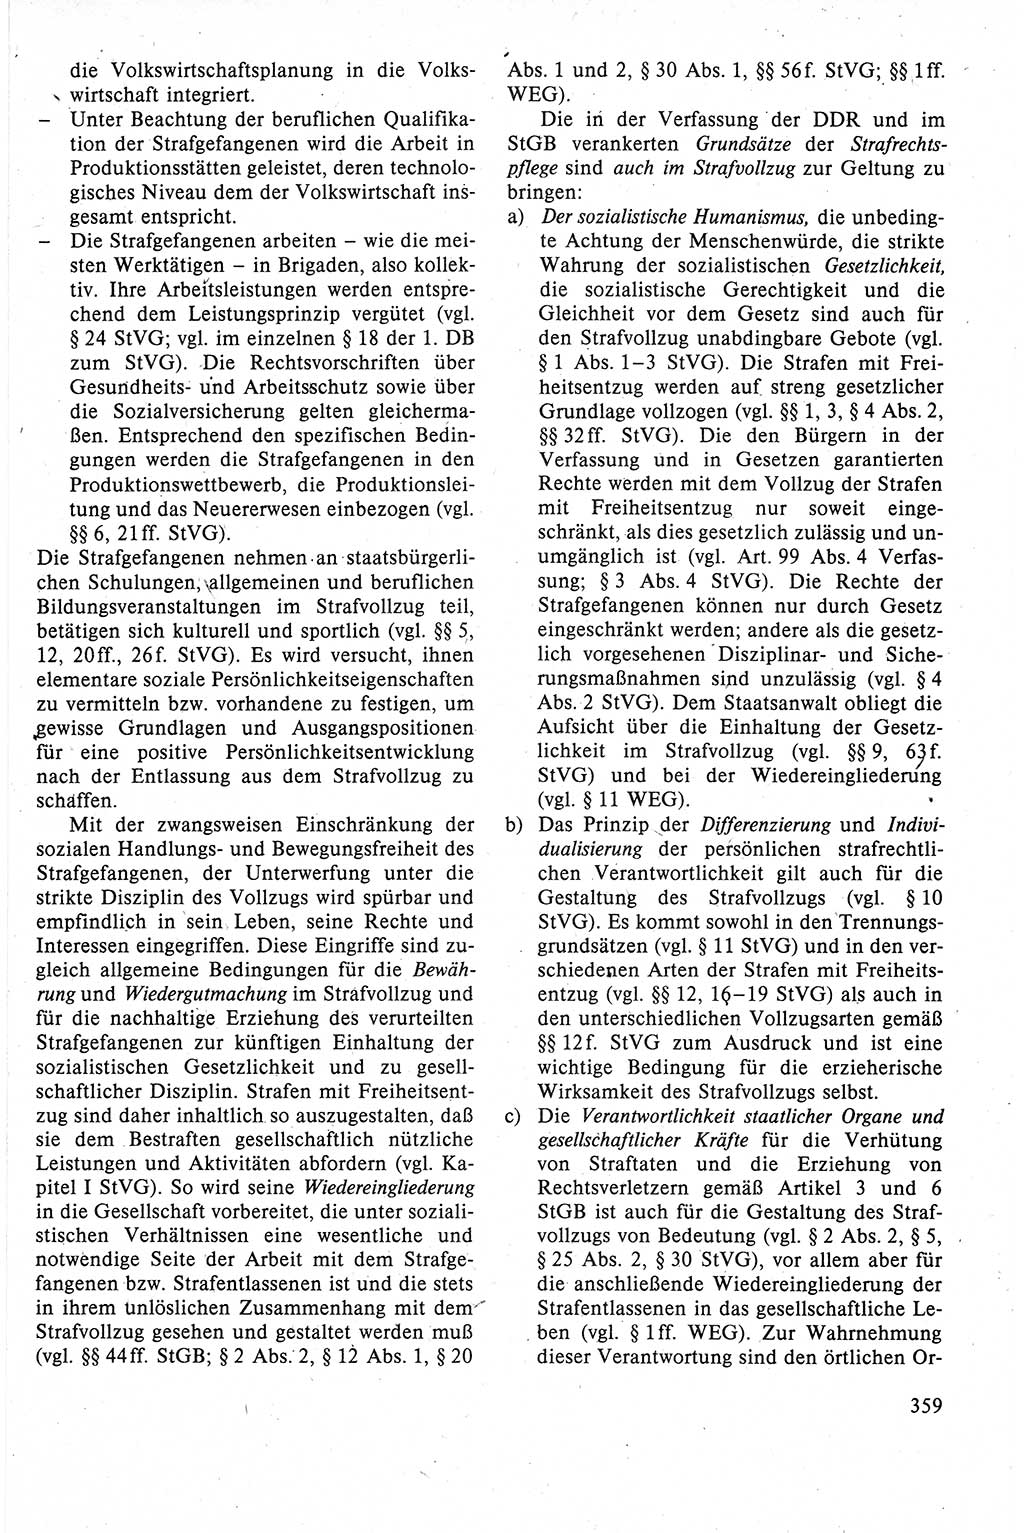 Strafrecht der DDR (Deutsche Demokratische Republik), Lehrbuch 1988, Seite 359 (Strafr. DDR Lb. 1988, S. 359)